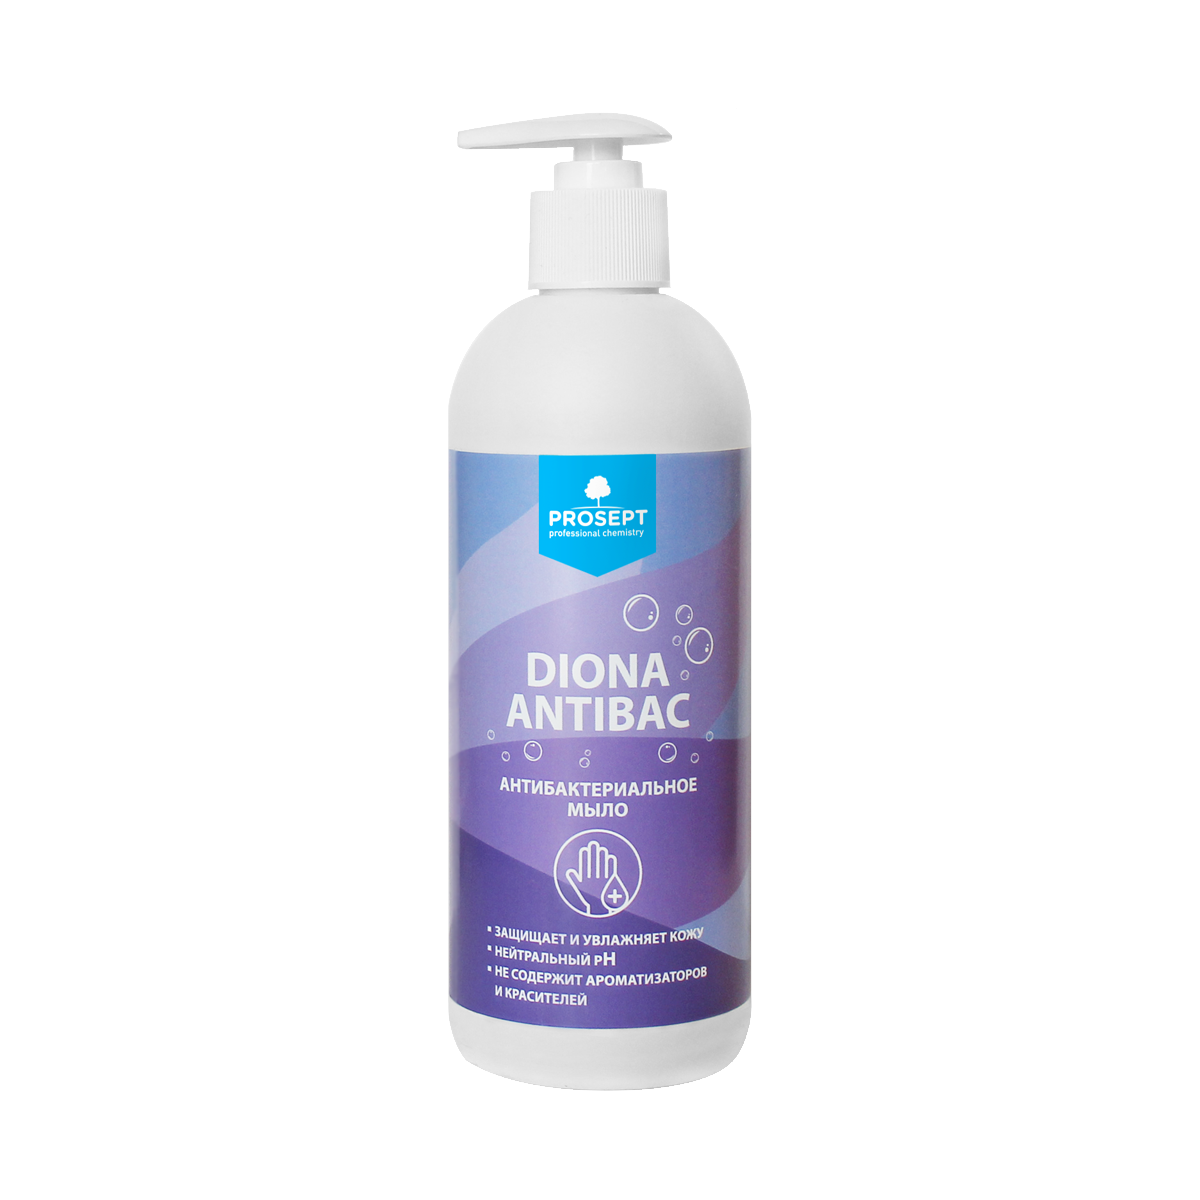 Diona Antibac - антибактериальное мыло